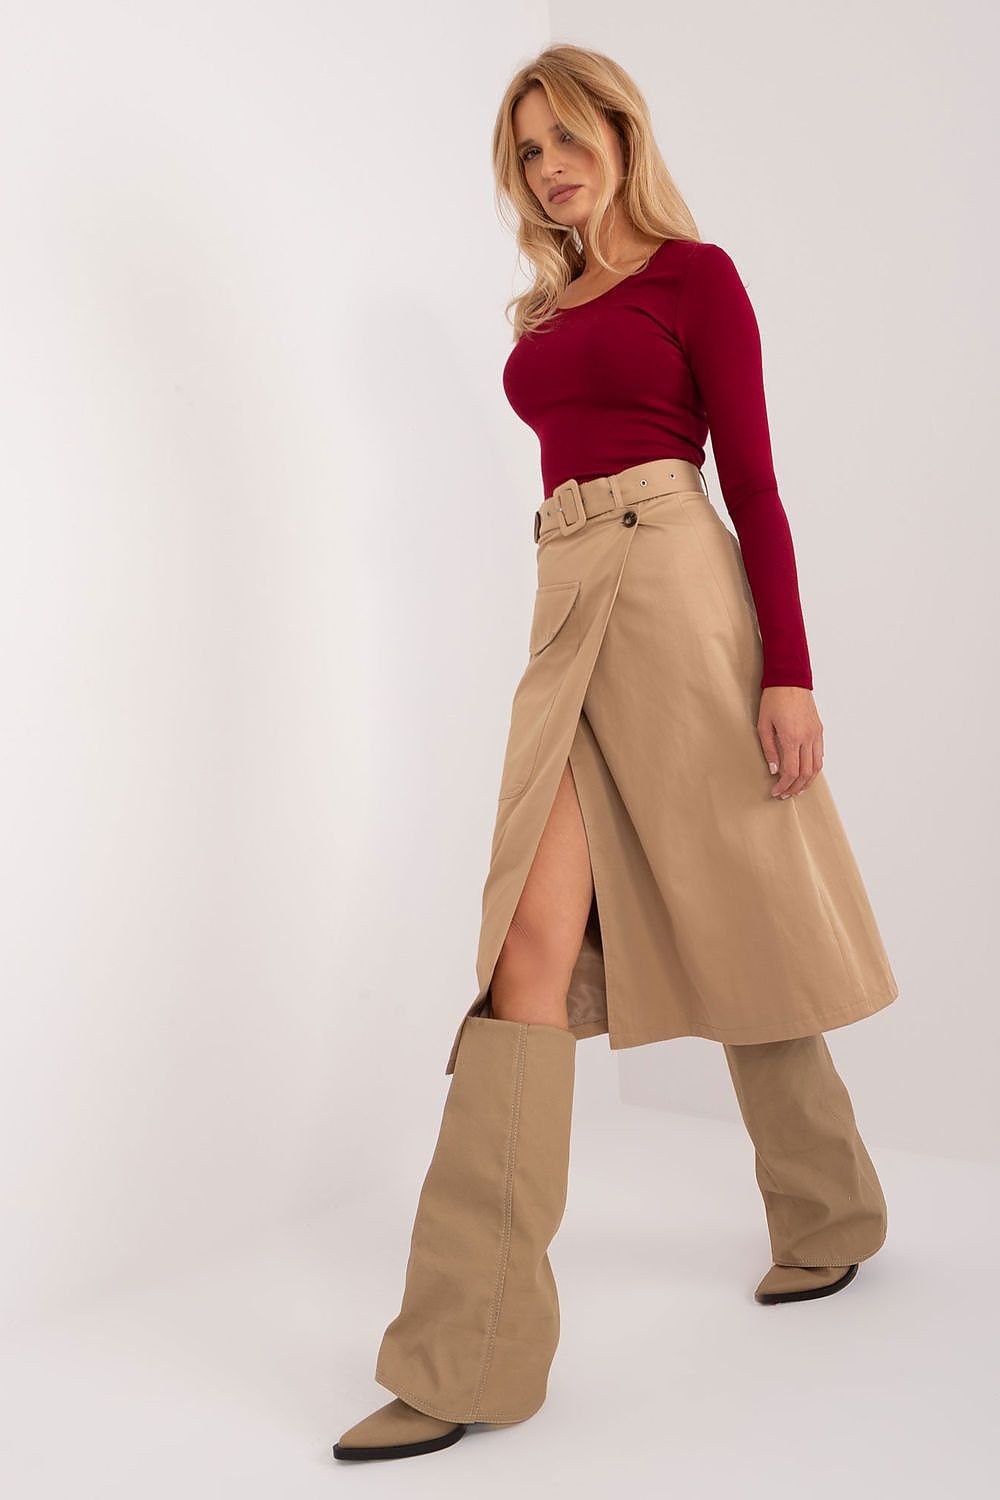 Skirt model 193268 Factory Price